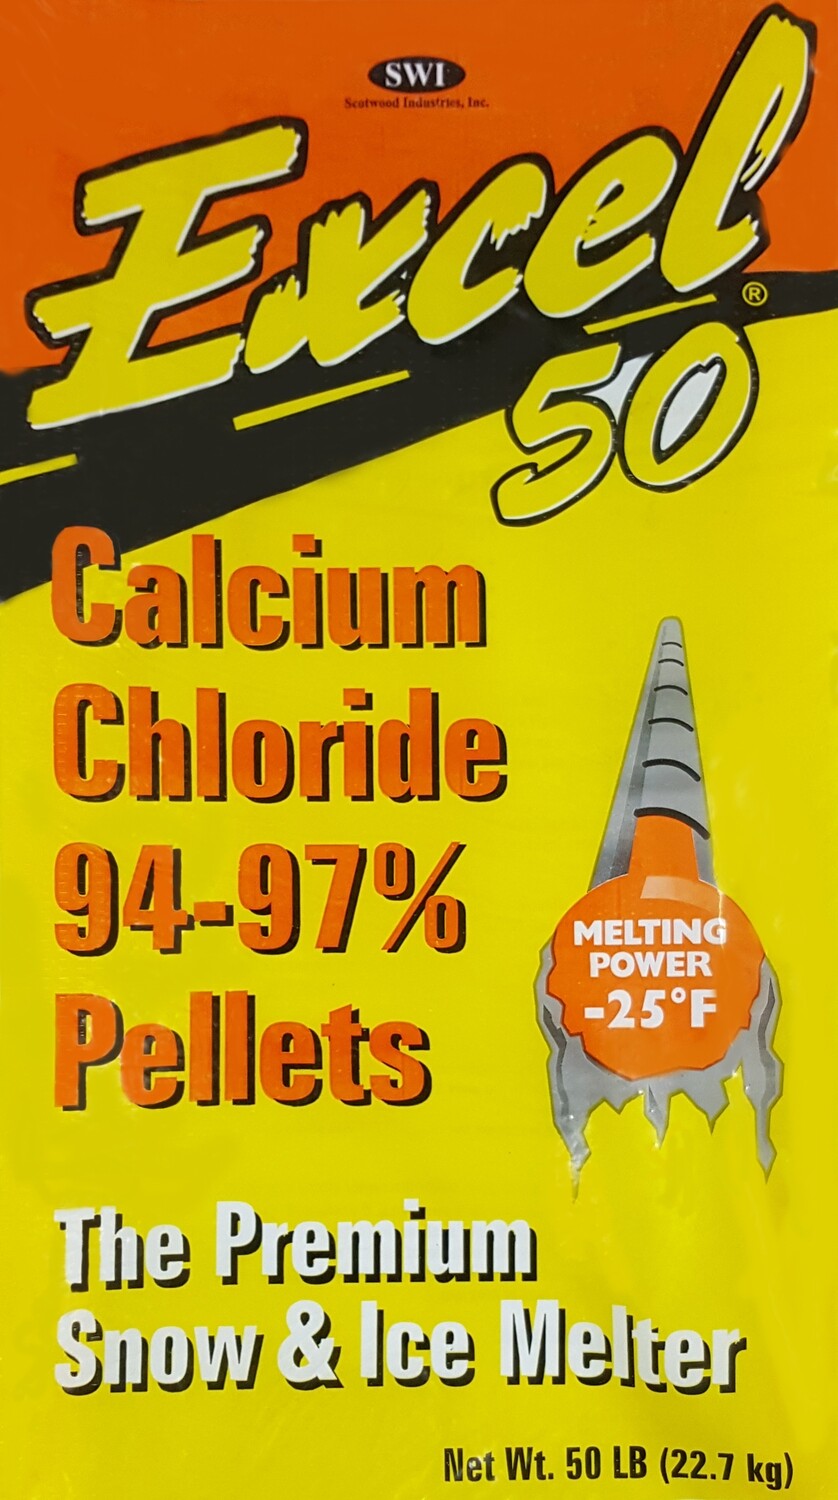 Excel 50 Calcium Chloride - Full Pallet